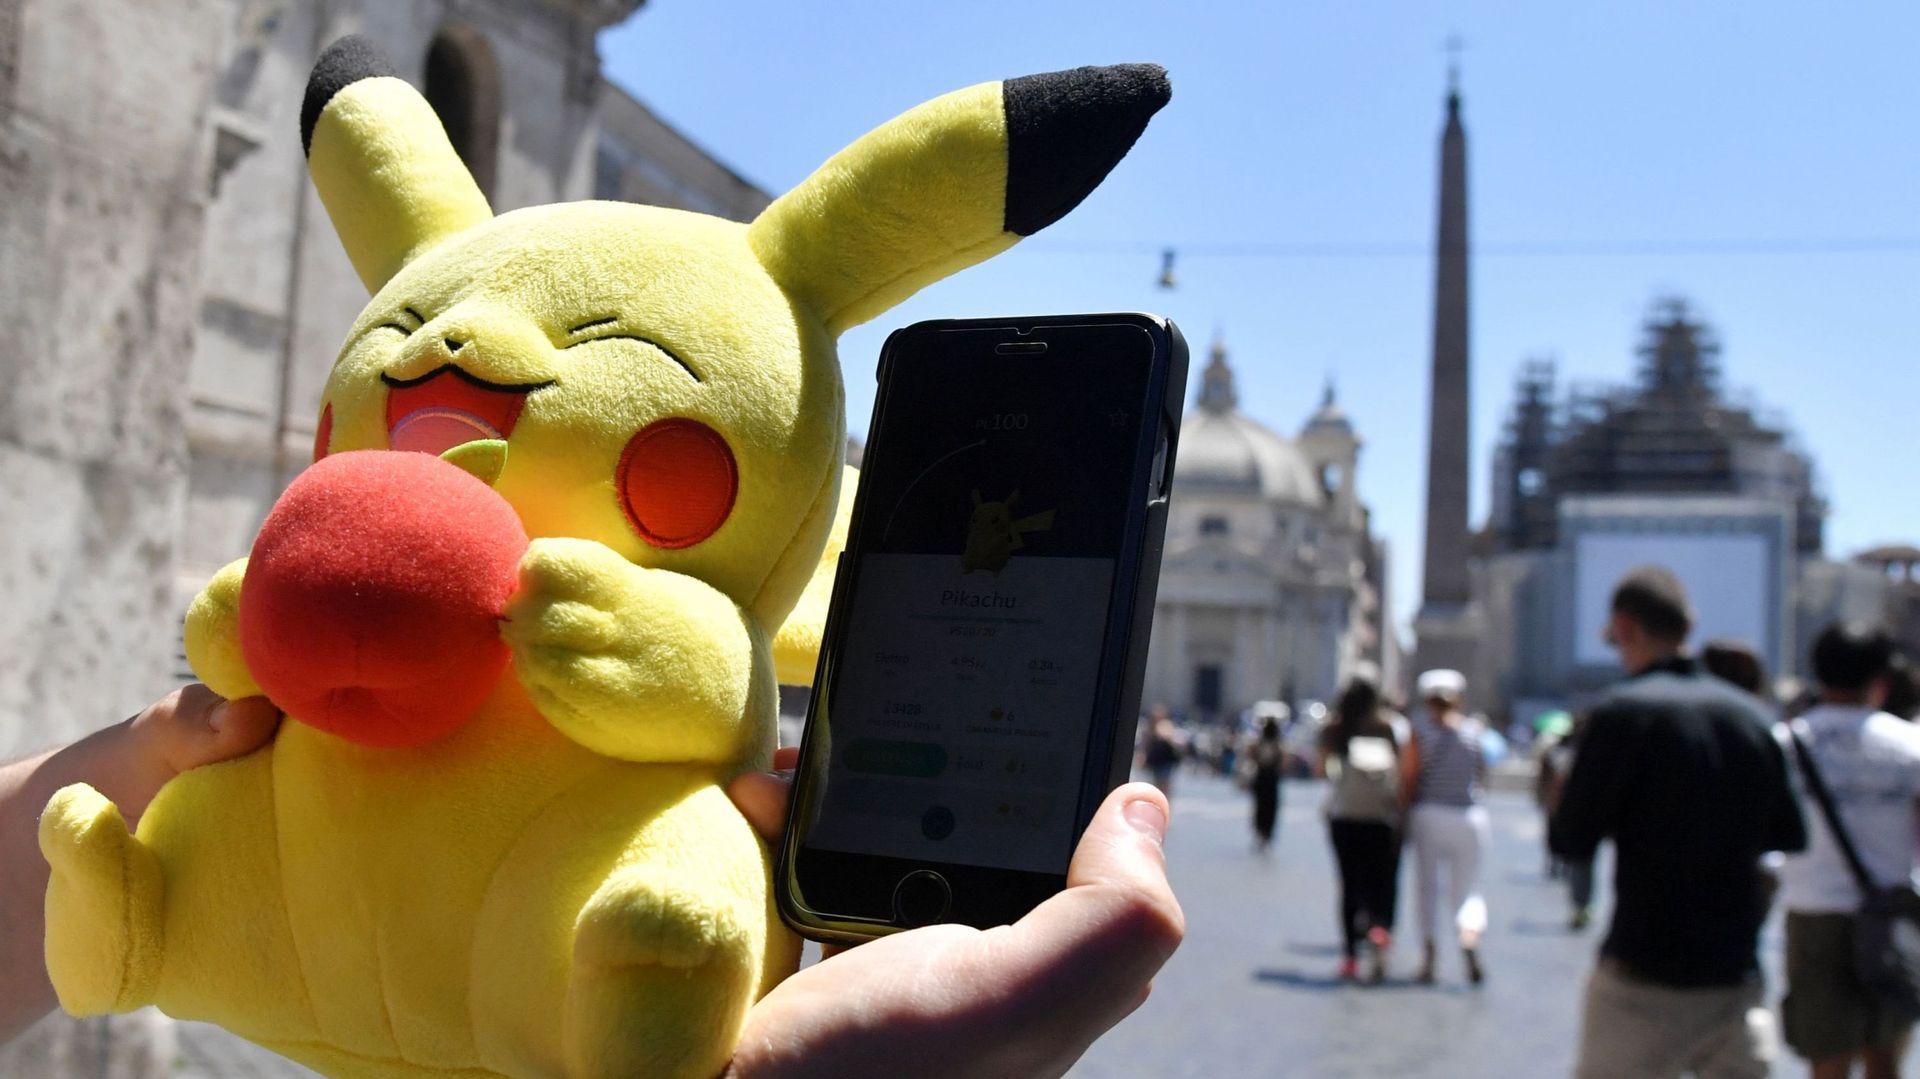 Un évêque italien qualifie le jeu Pokémon Go de "fabrique de cadavres ambulants"